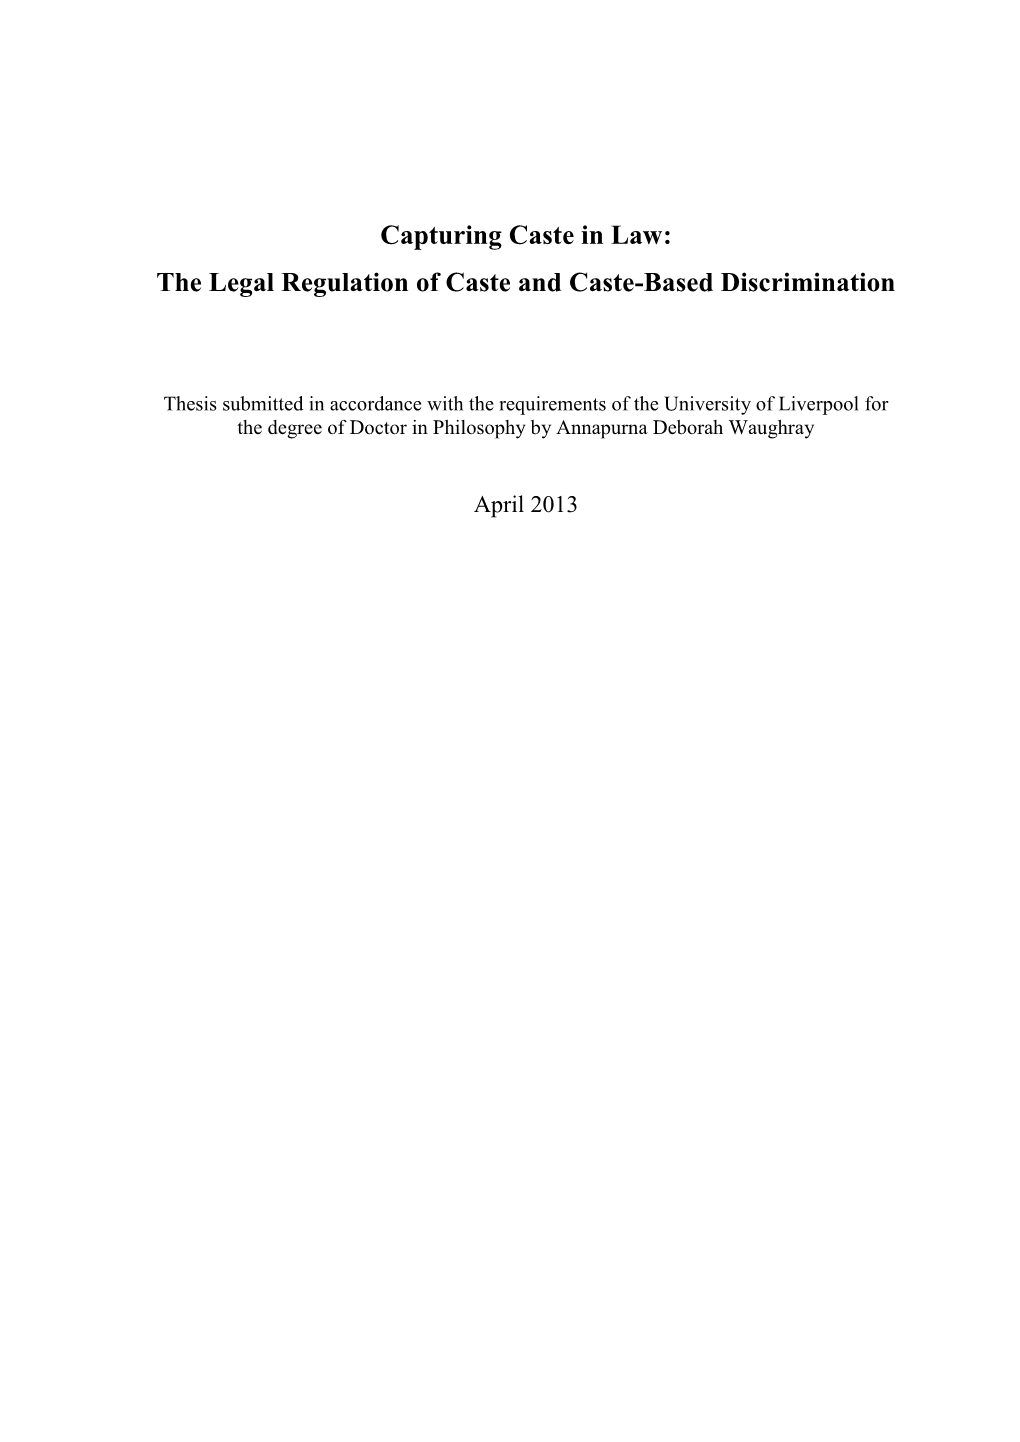 Capturing Caste in Law: the Legal Regulation of Caste and Caste-Based Discrimination